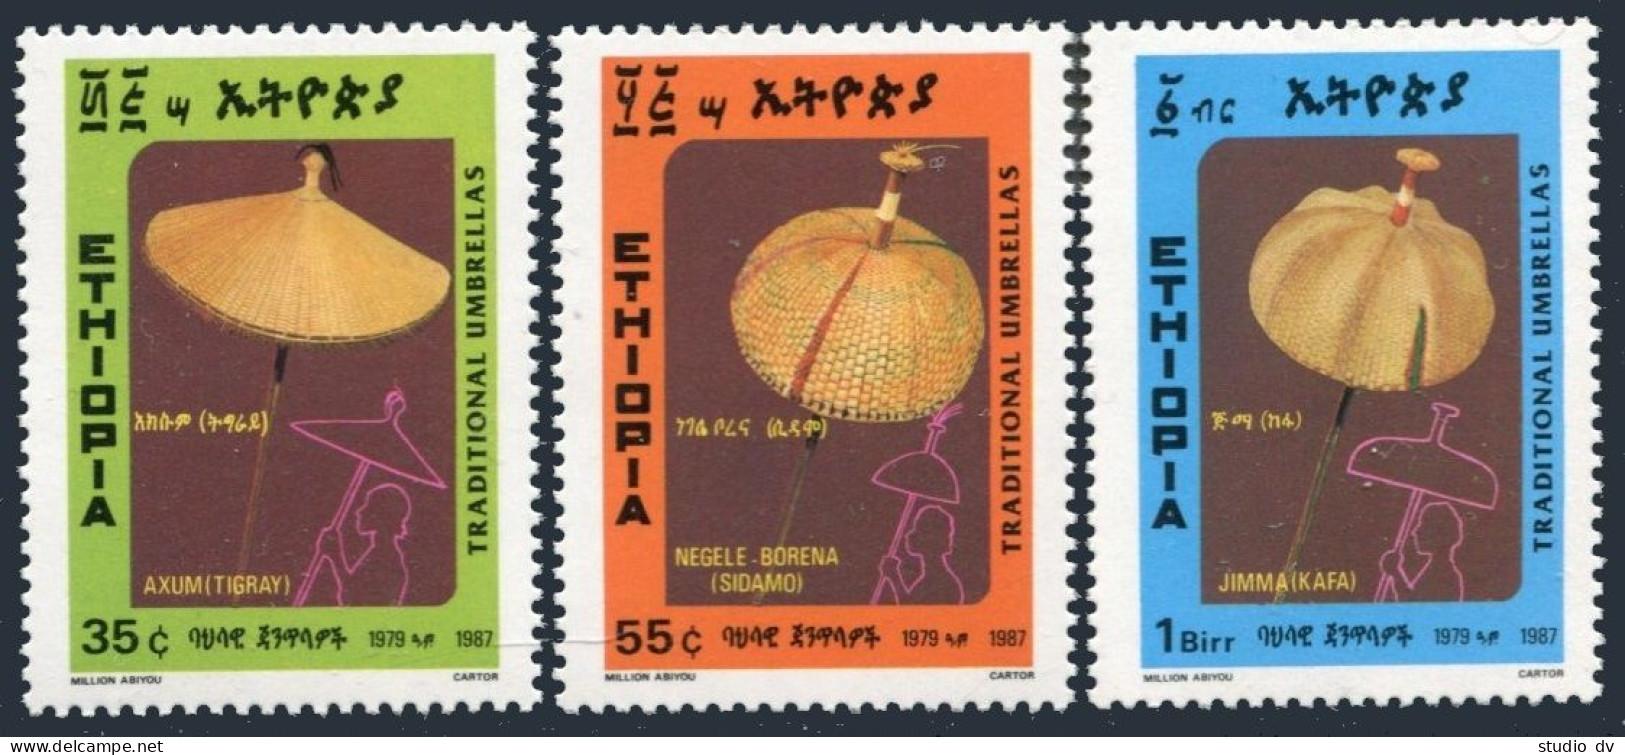 Ethiopia 1170-1172, MNH. Michel 1256-1258. Umbrellas 1987. - Ethiopie